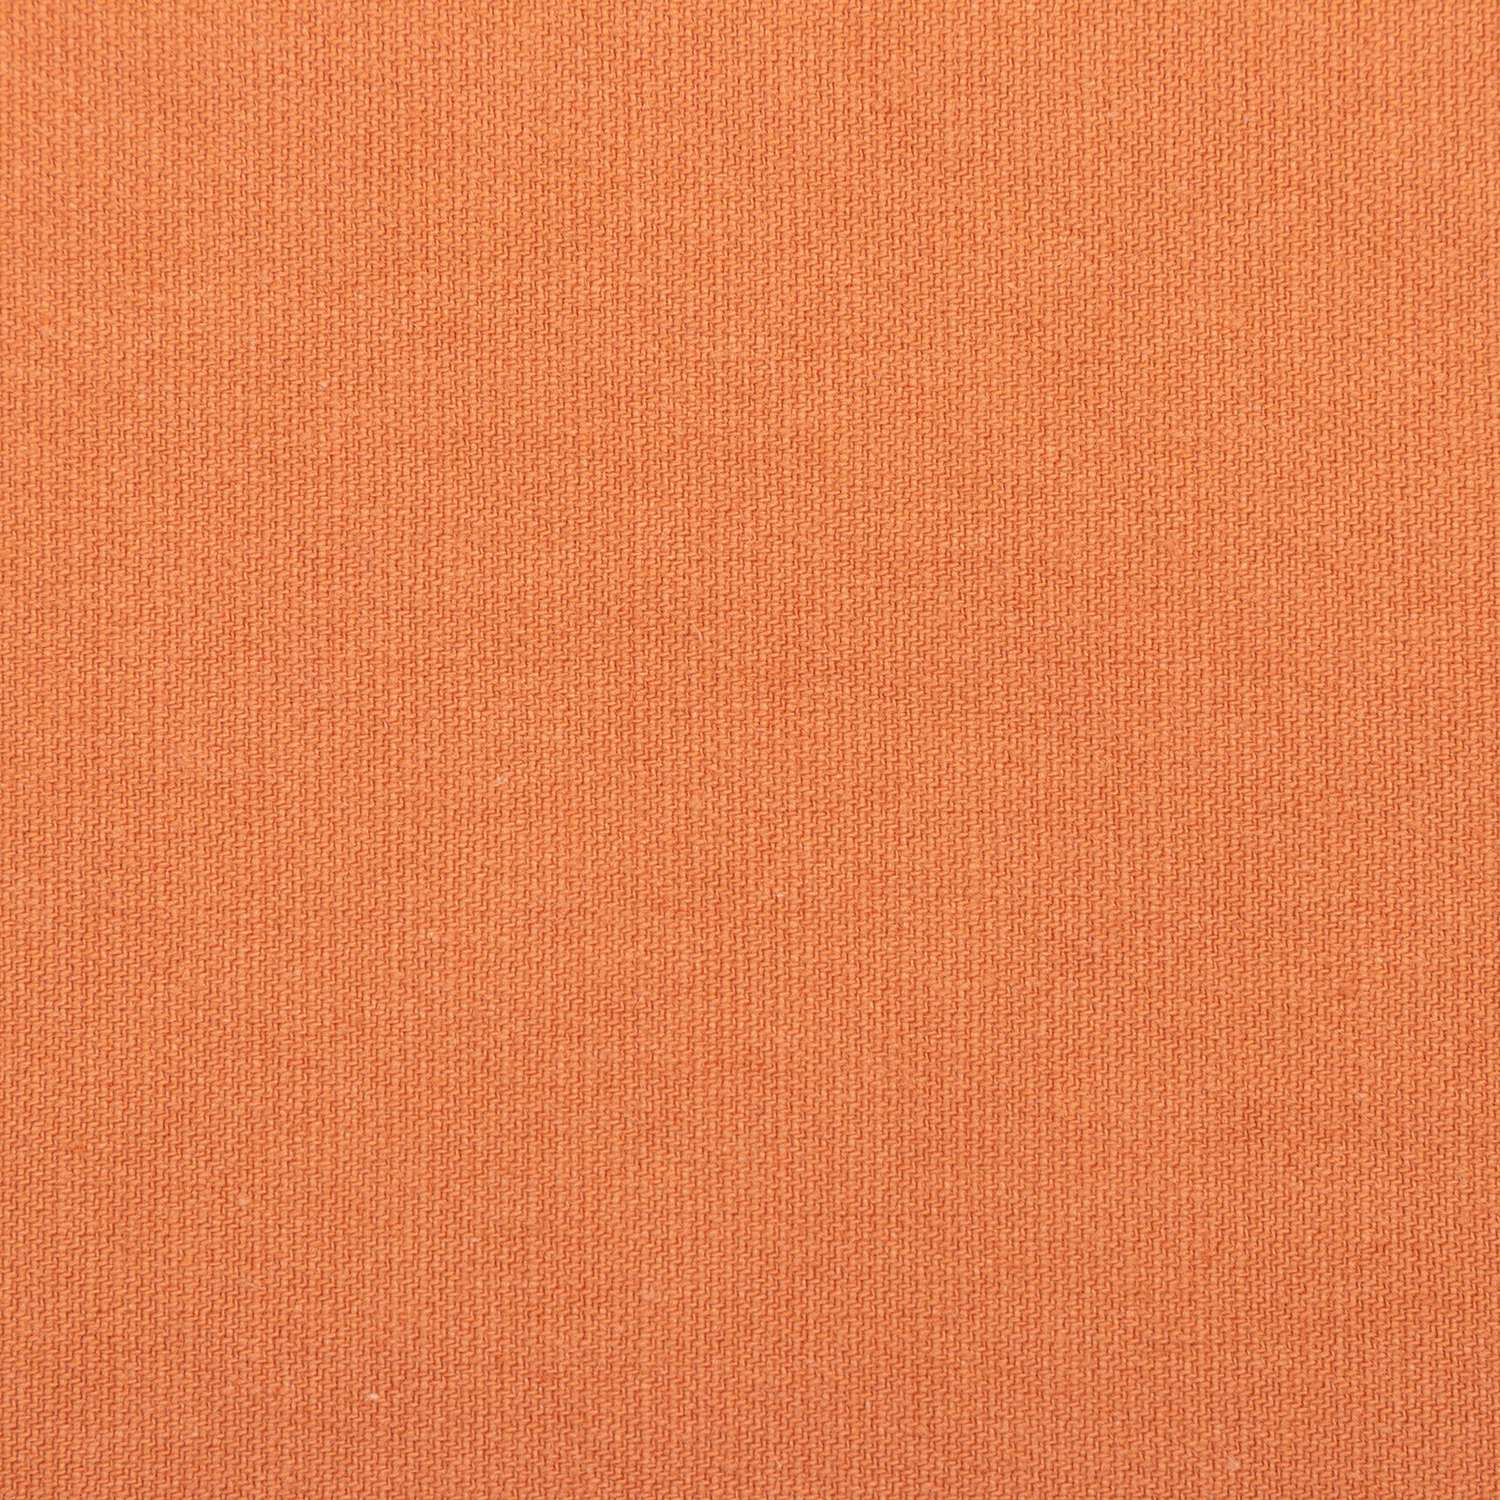 Скатерть Этель оранжевая 150х180 см саржа - фото 4